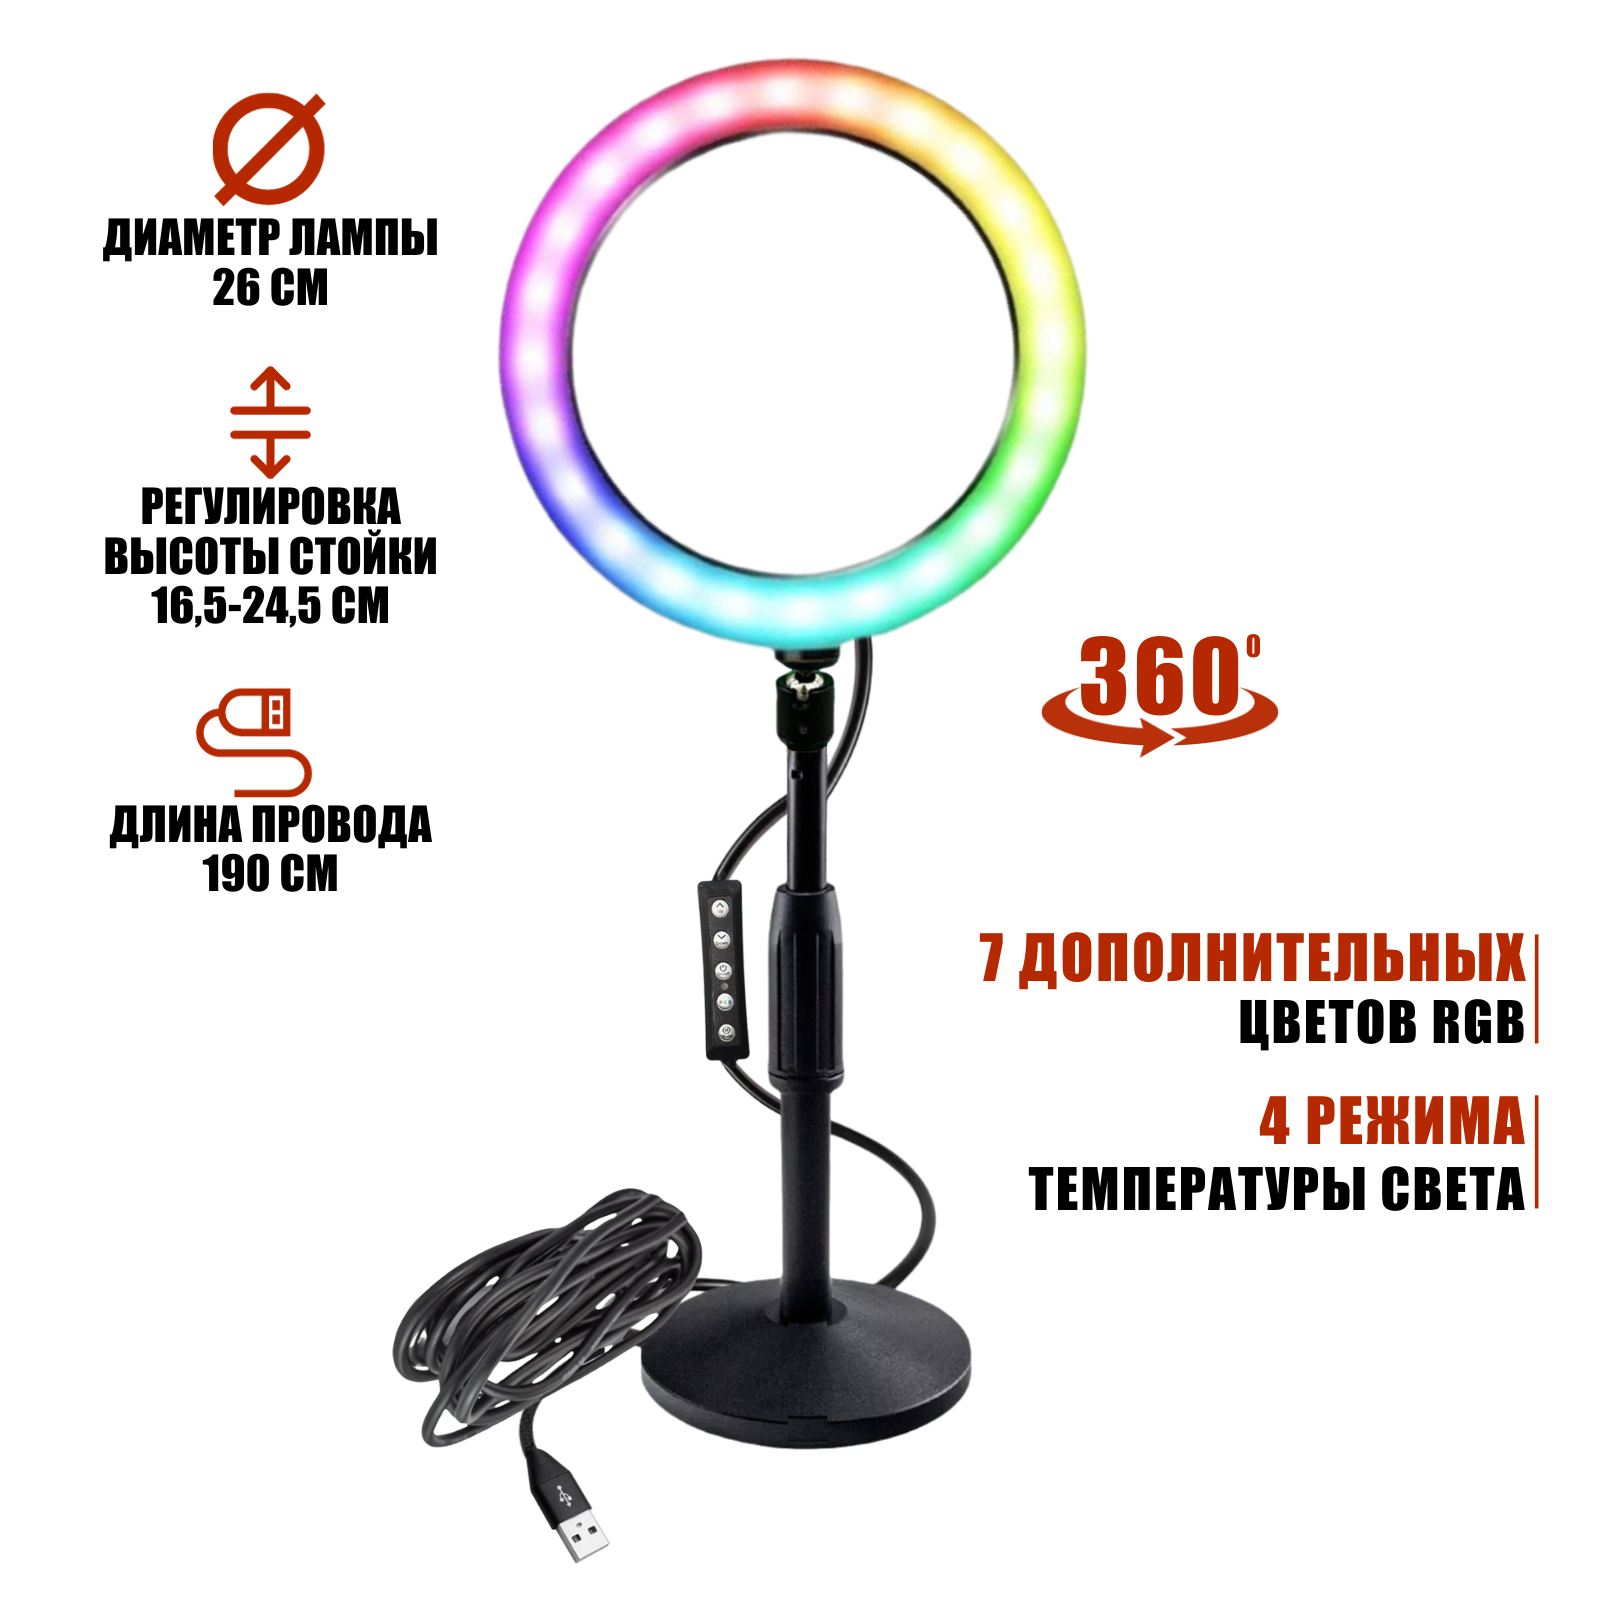 Лампа кольцевая настольная RGB-ZM26 диаметр 26 см с эффектом RGB на шарнире